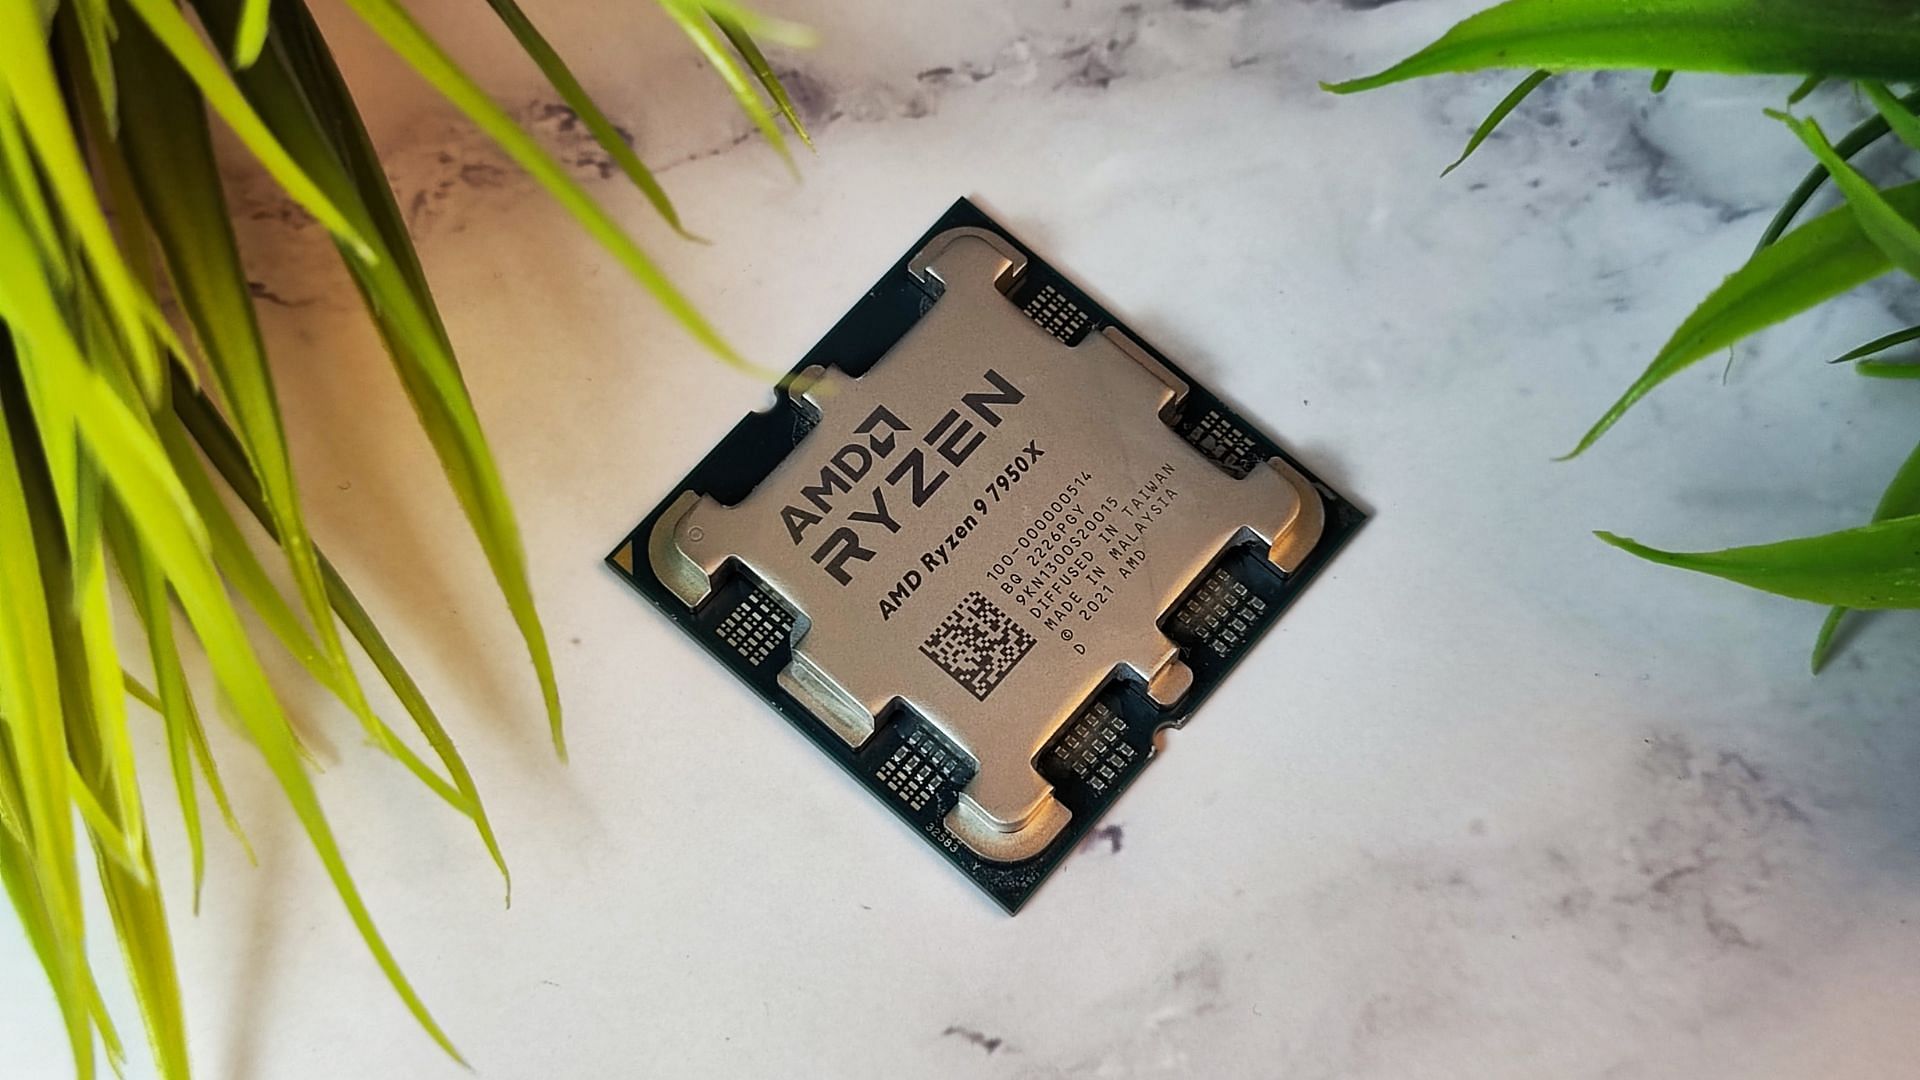 AMD Ryzen 9 7950X With 16 Zen 4 Cores Shows Up In AM5 'LGA 1718